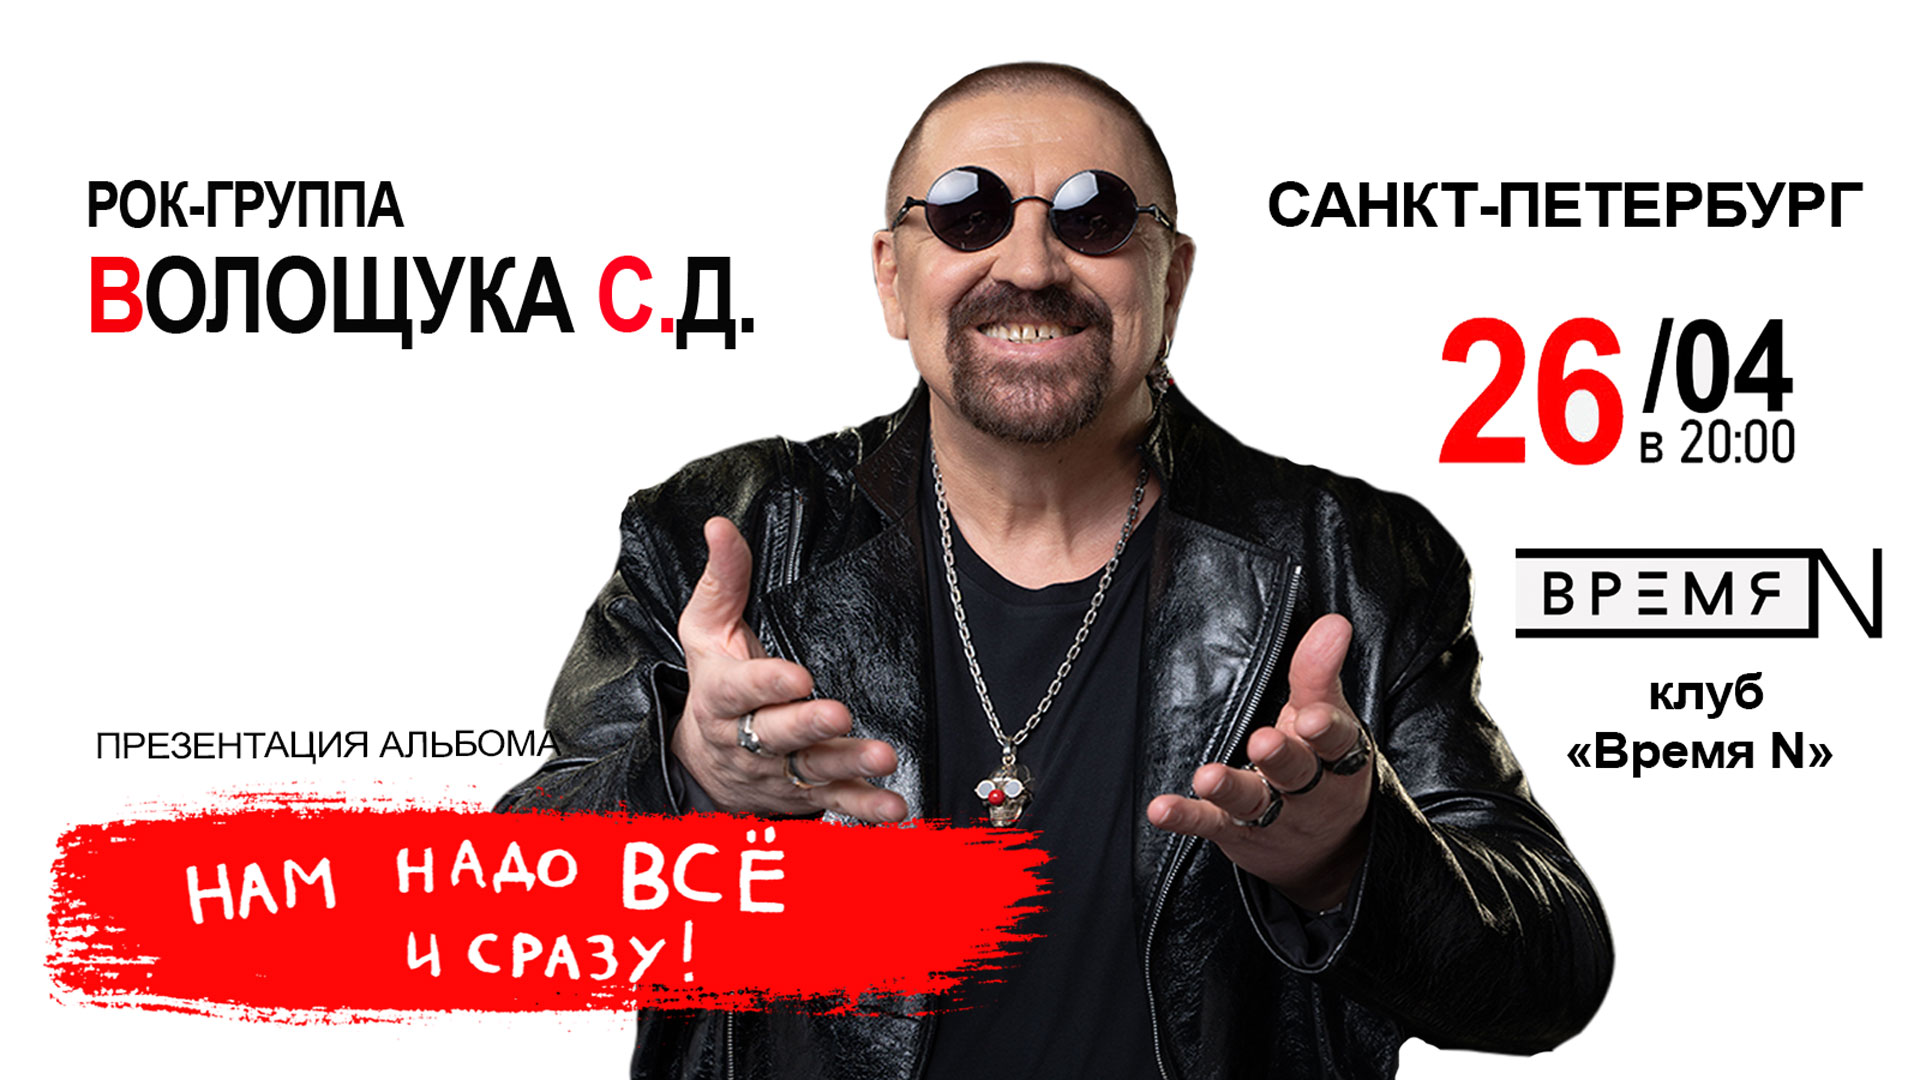 Рок-группа Волощука С.Д. ждет вас 26 апреля в 20:00 на концерте в клубе ВремяN